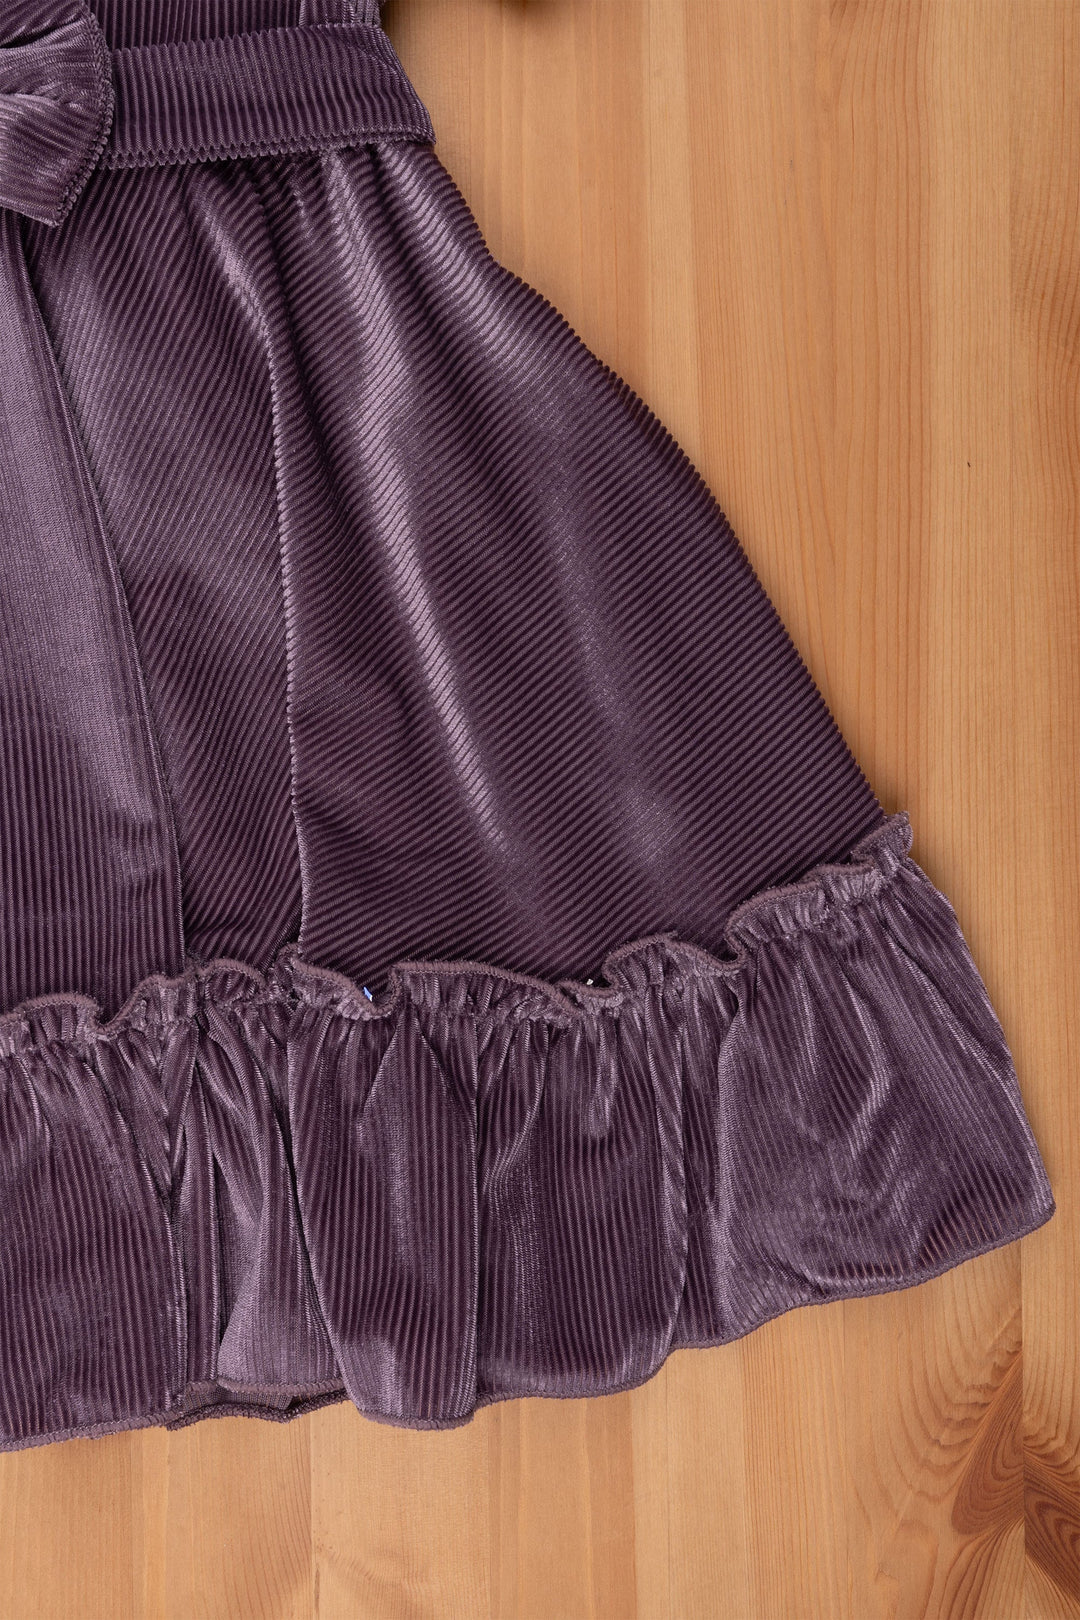 The Nesavu Frocks & Dresses Purple Velvet Baby Girl Frock - Peter Pan Collar & Bow Embellishment Nesavu Girls Velvet Frock | Party frock for Baby Girls | The Nesavu